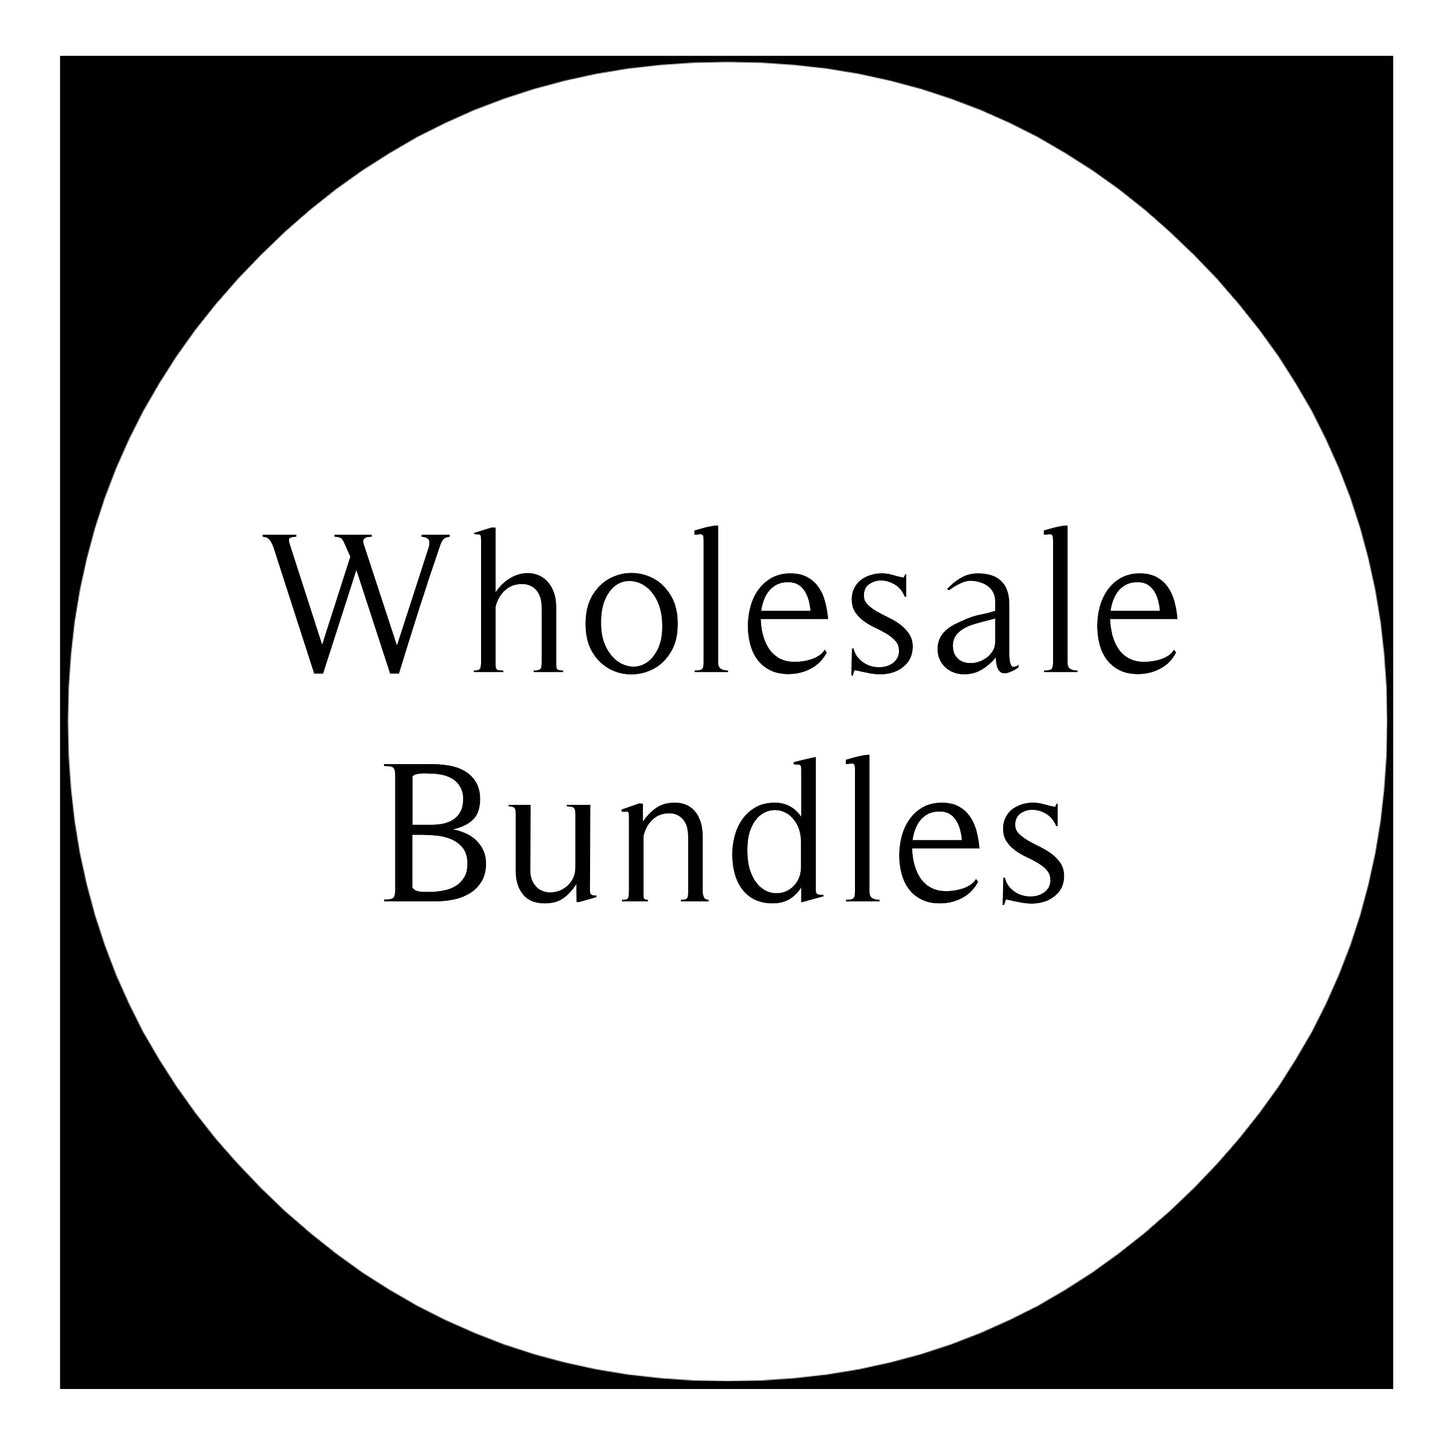 Wholesale Bundles